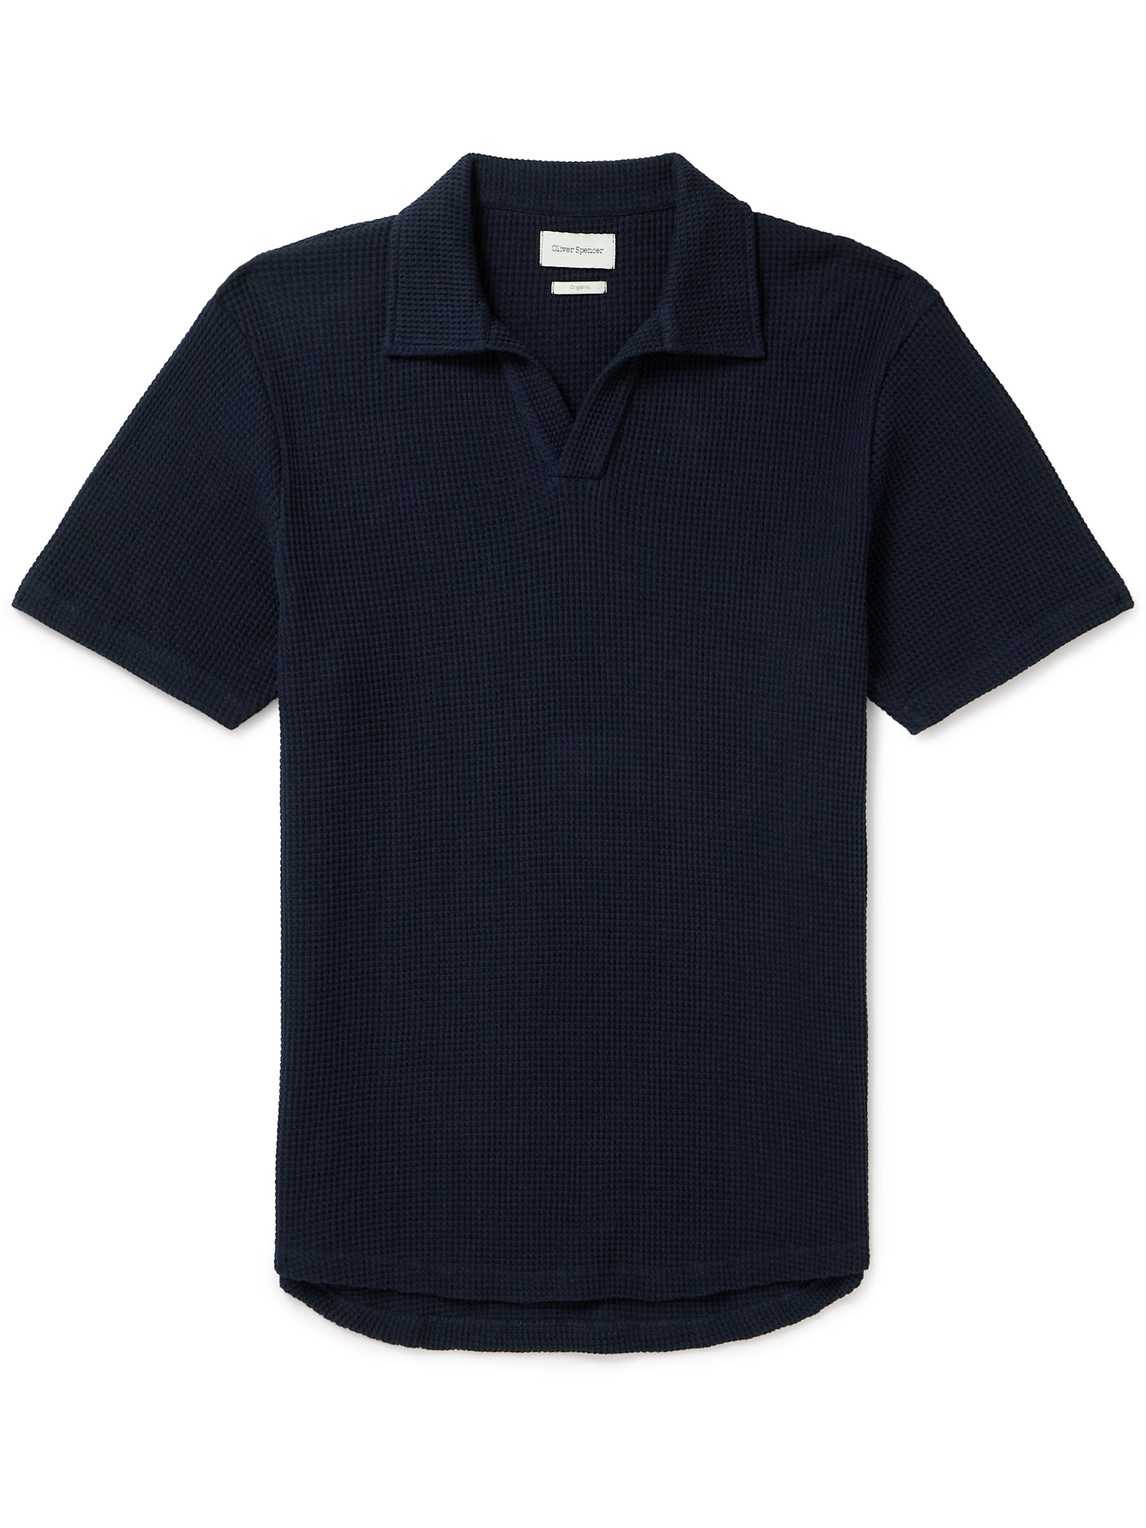 Austell Waffle-Knit Organic Cotton-Blend Polo Shirt